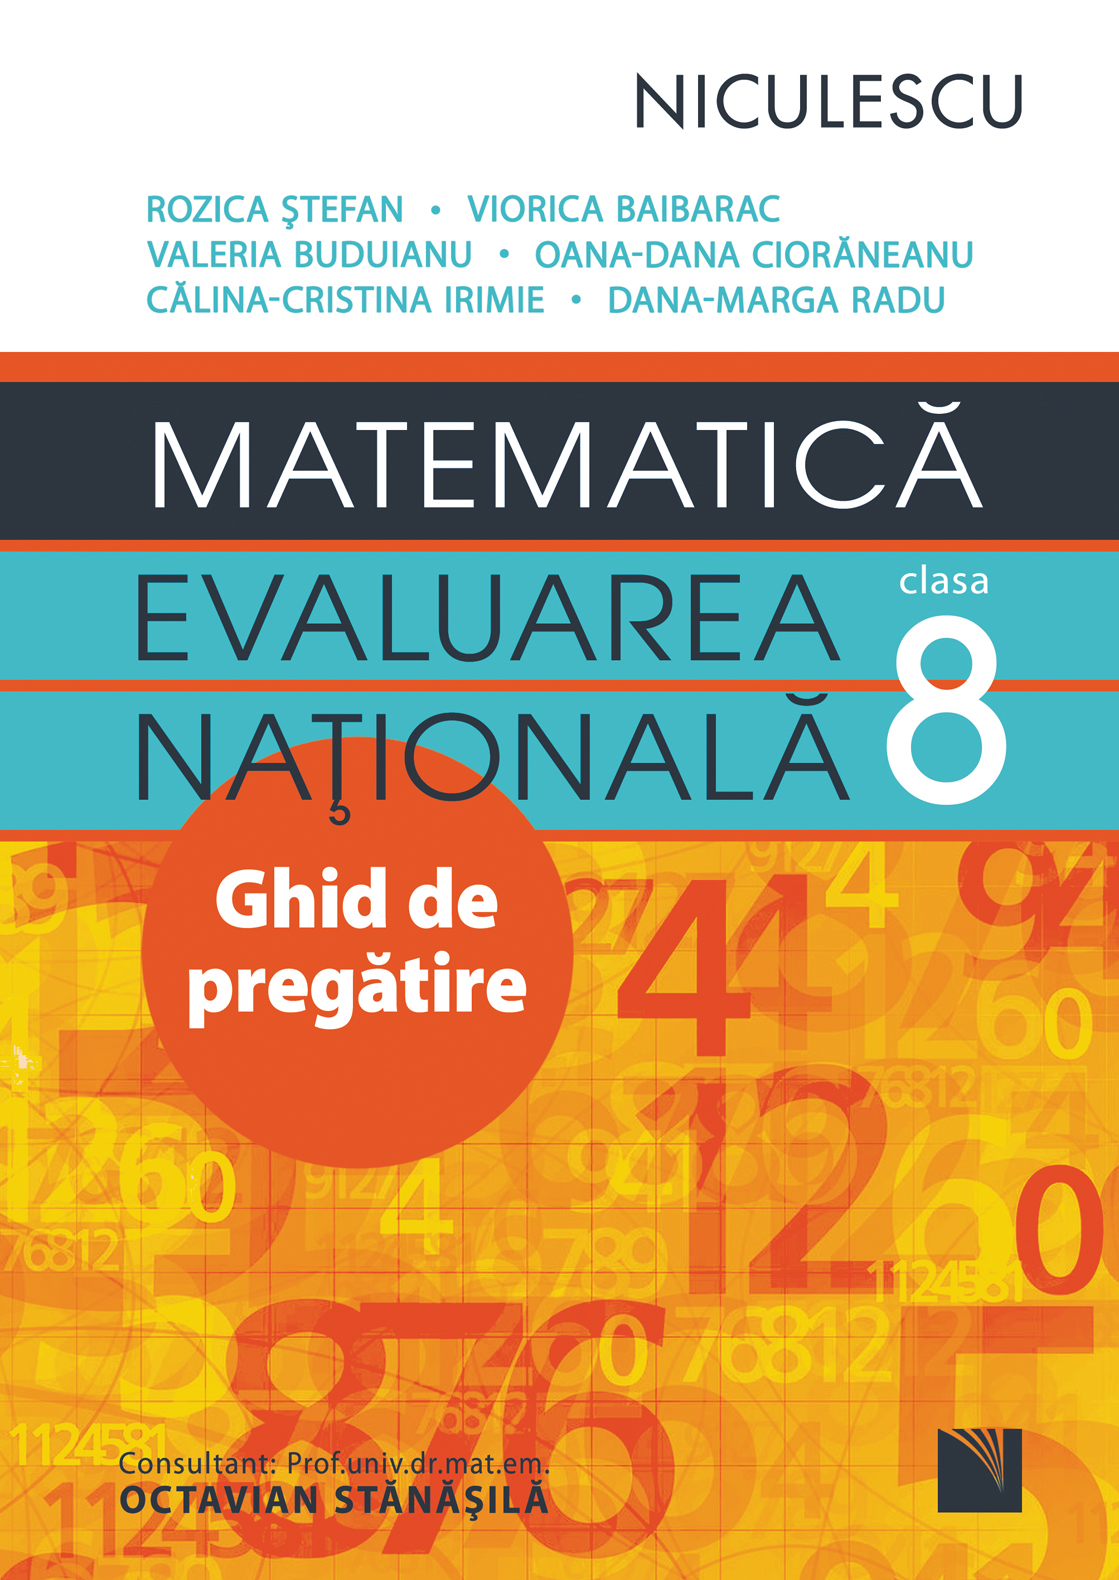 Matematica. Evaluarea Nationala clasa a VIII-a | Rozica Stefan, Viorica Baibarac